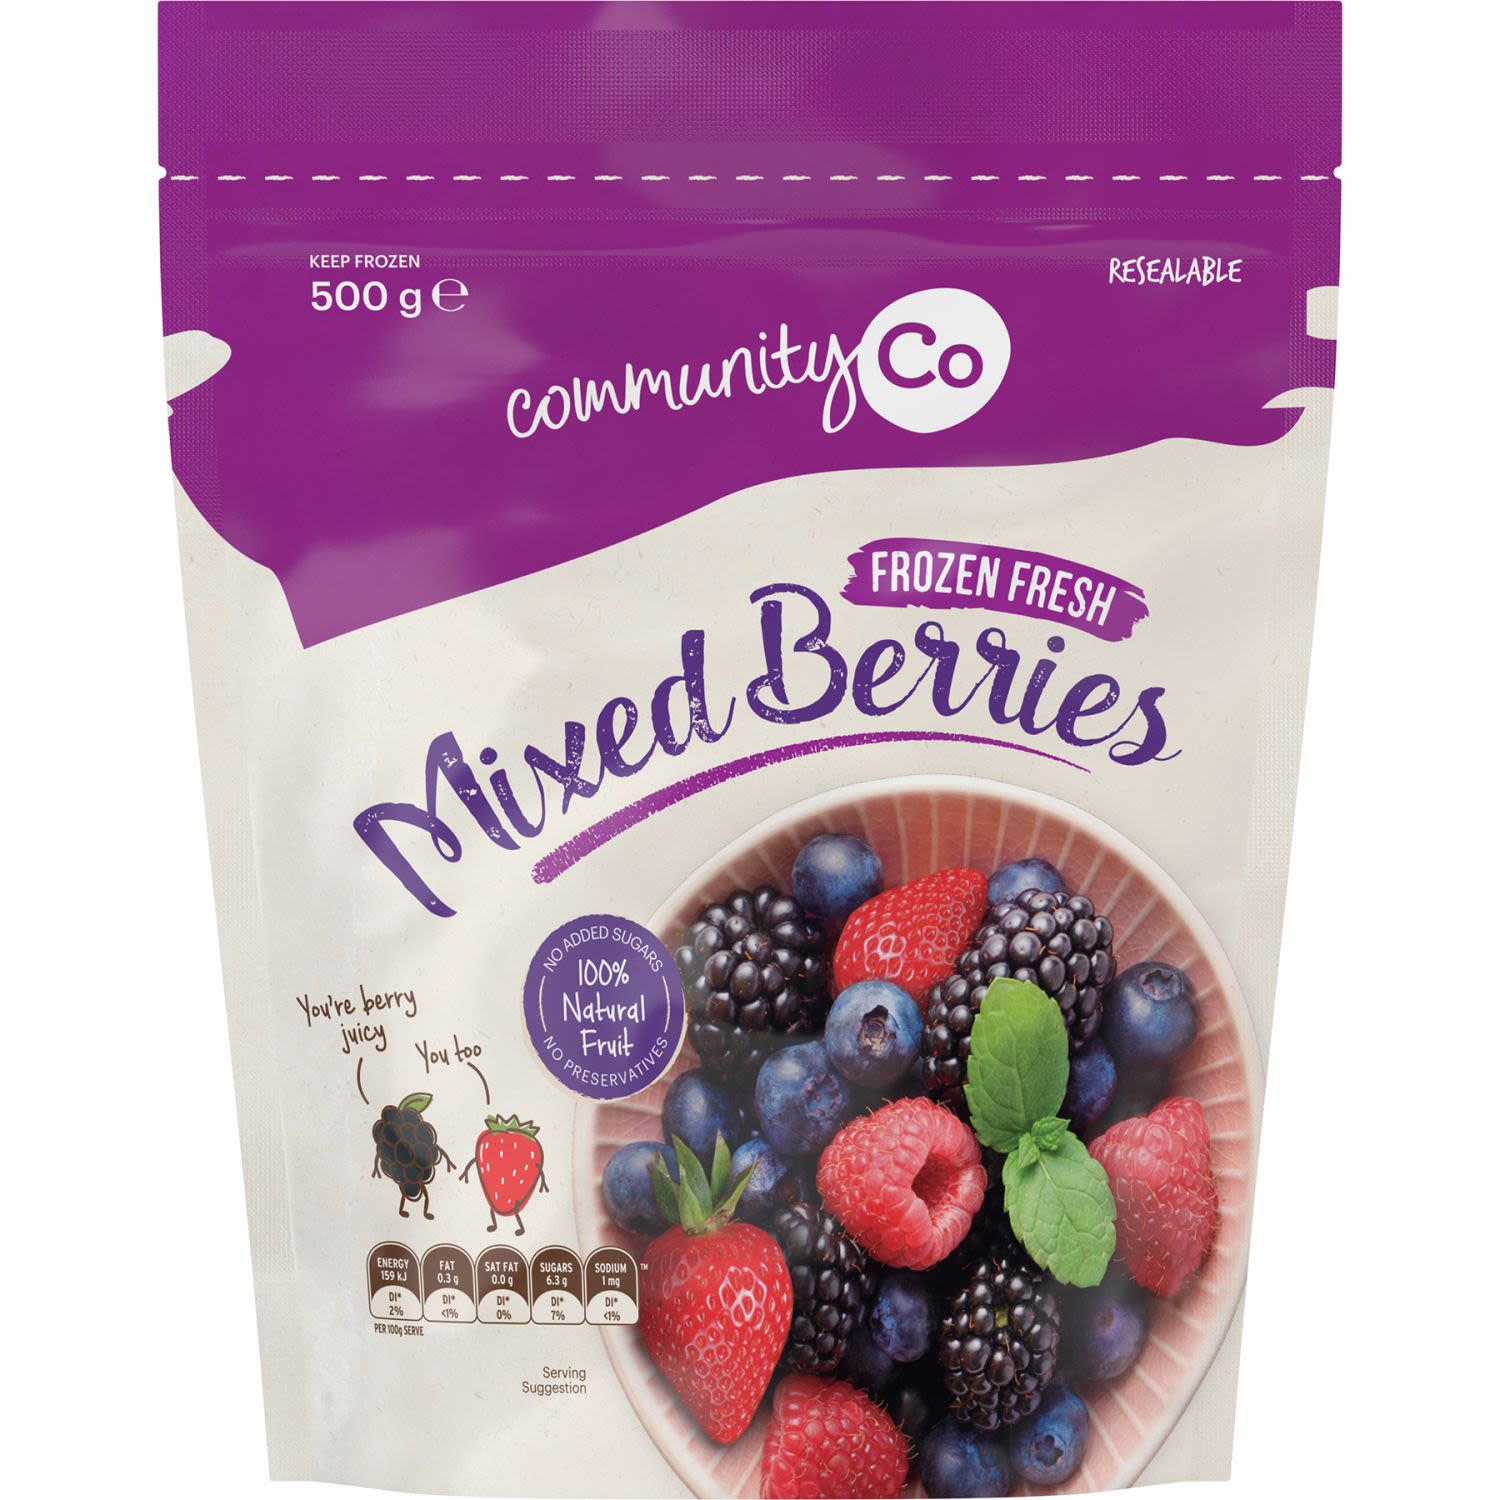 Community Co Frozen Mixed Berries, 500g